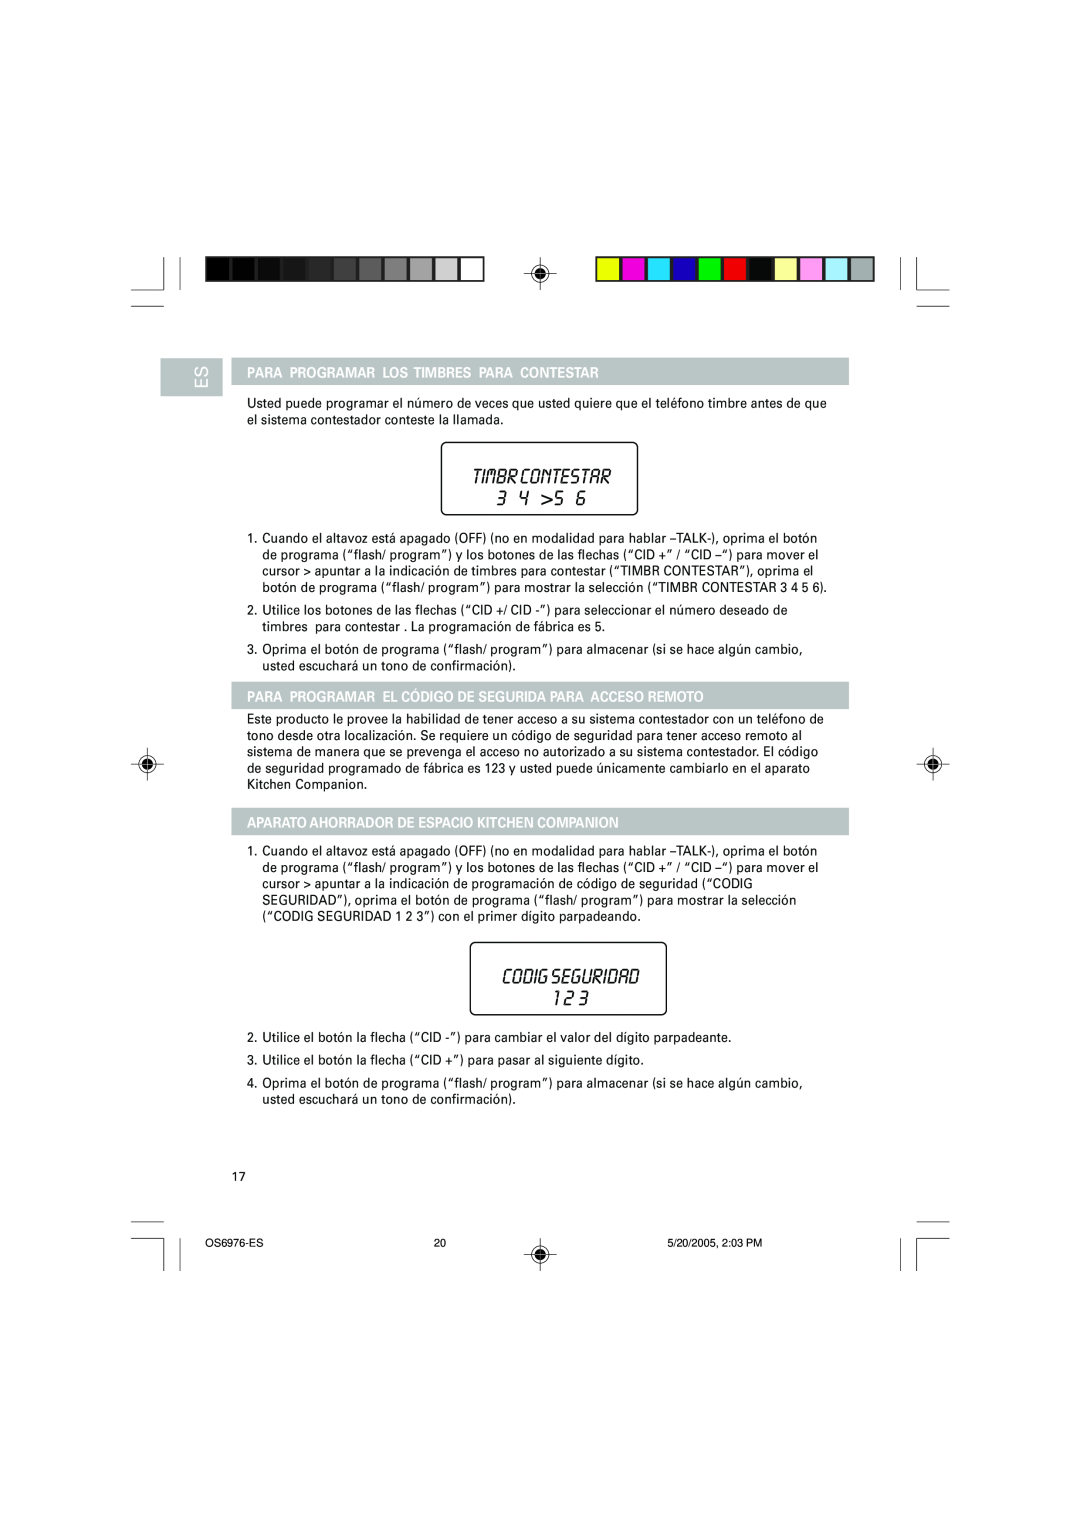 Oregon Scientific OS6976 user manual TIMBR CONTESTAR 3 4 5, CODIG SEGURIDAD 1 2, Para Programar Los Timbres Para Contestar 